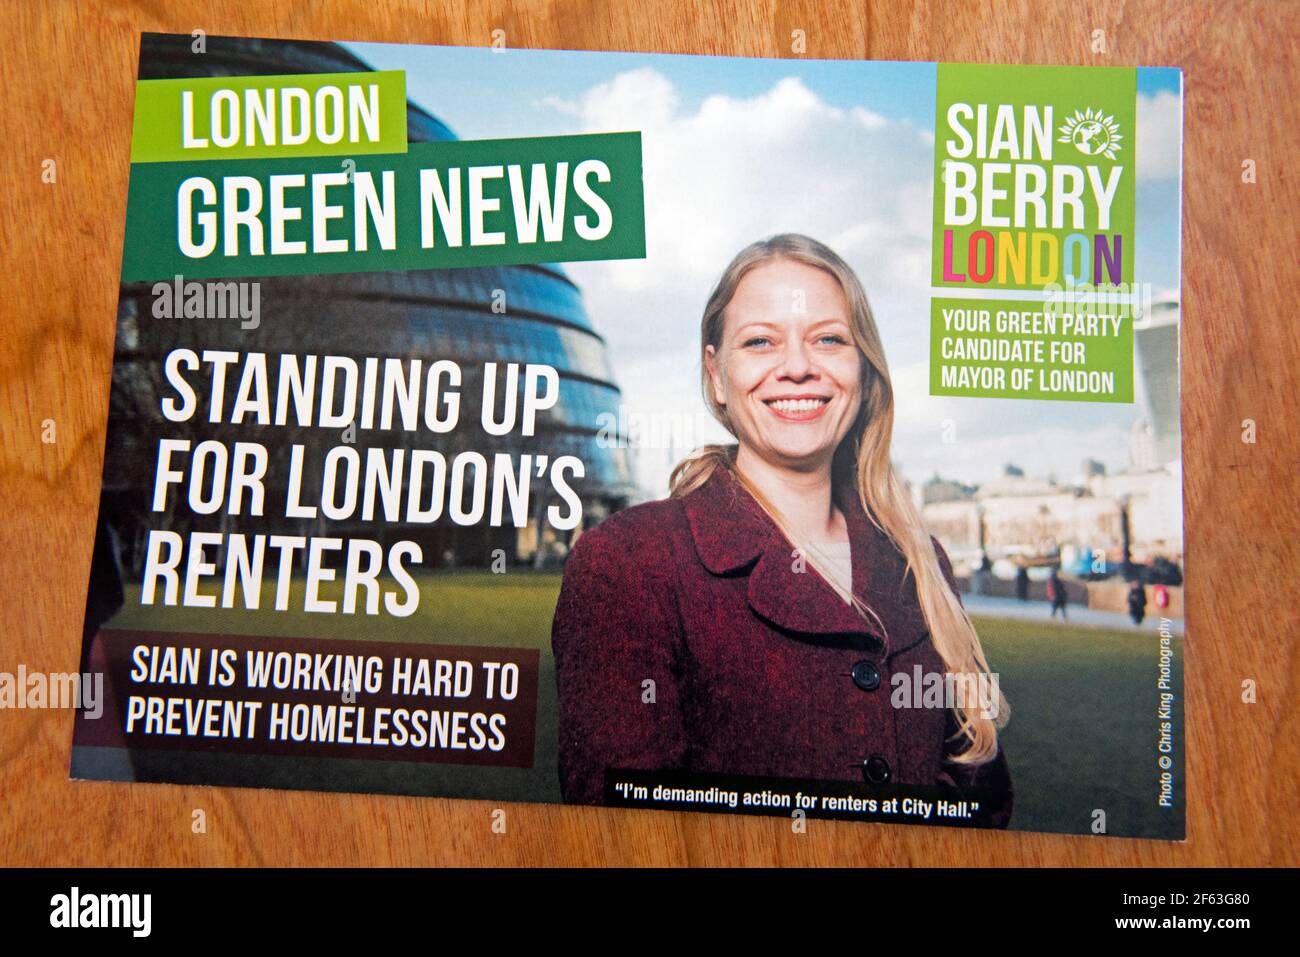 Dépliant politique électorale Mayoral de Londres, London Green News, Sian Berry. Le candidat du Parti Vert pour le maire de Londres aux élections Mayoral et Assemble du Royaume-Uni en 2021 Banque D'Images